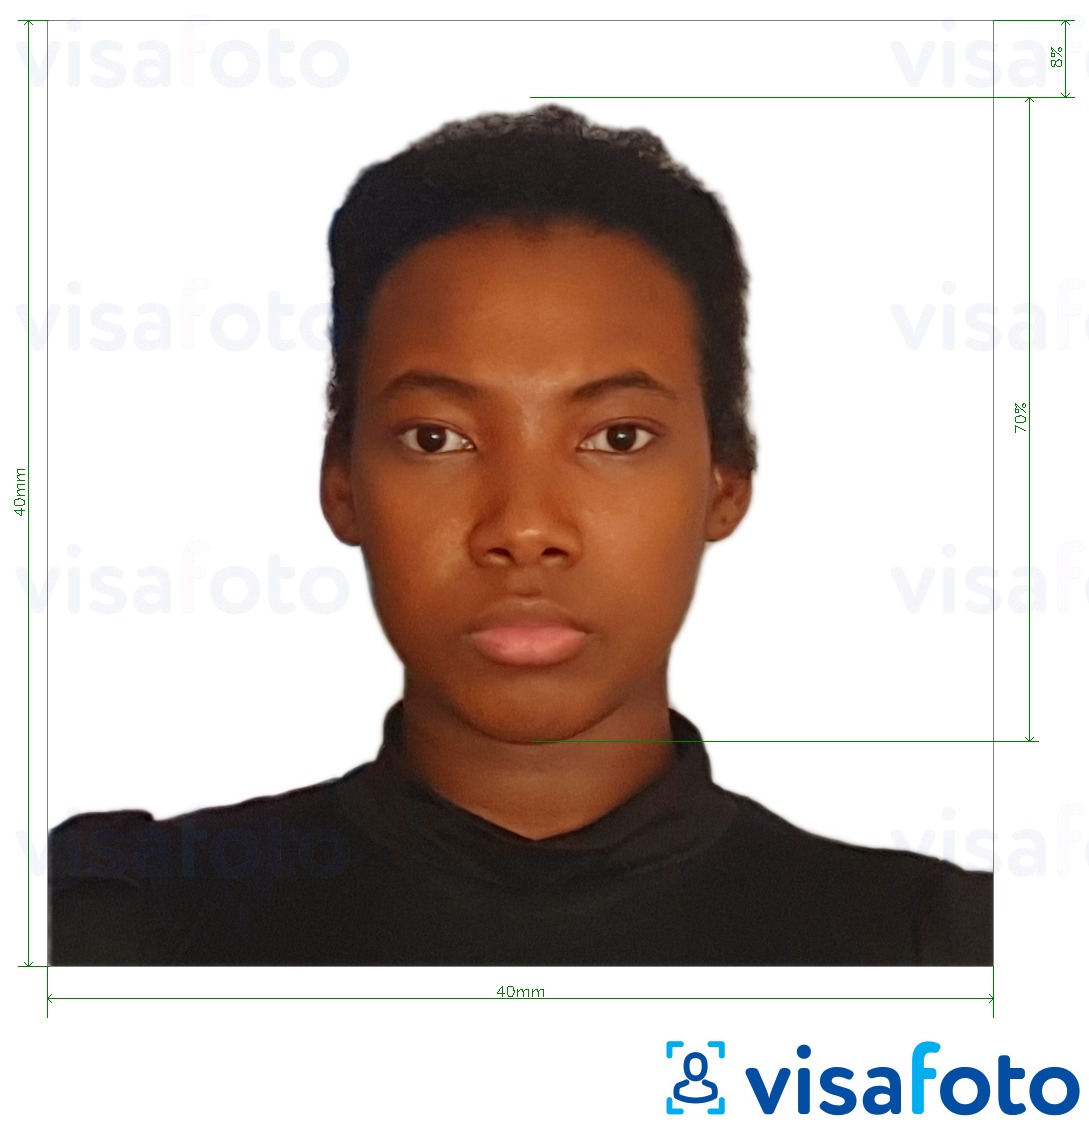 सटीक आकार विनिर्देश के साथ मेडागास्कर पासपोर्ट 40x40 मिमी के लिए तस्वीर का उदाहरण